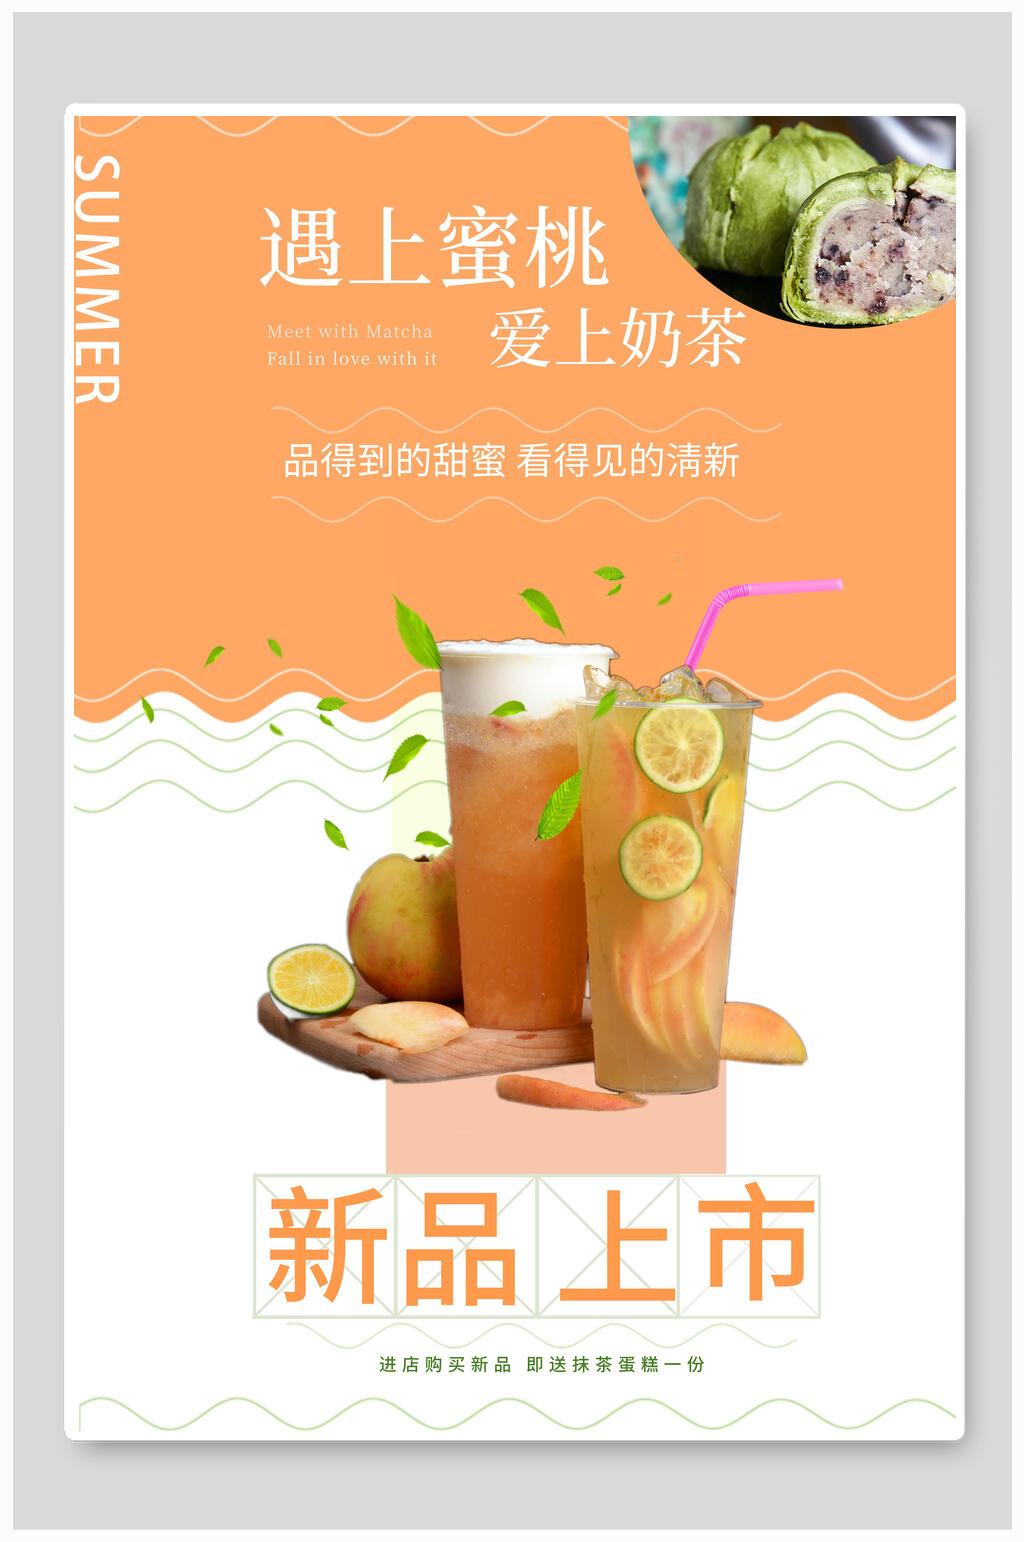 视觉美观的新品上市蜜桃奶茶海报素材下载,本次作品主题是平面广告